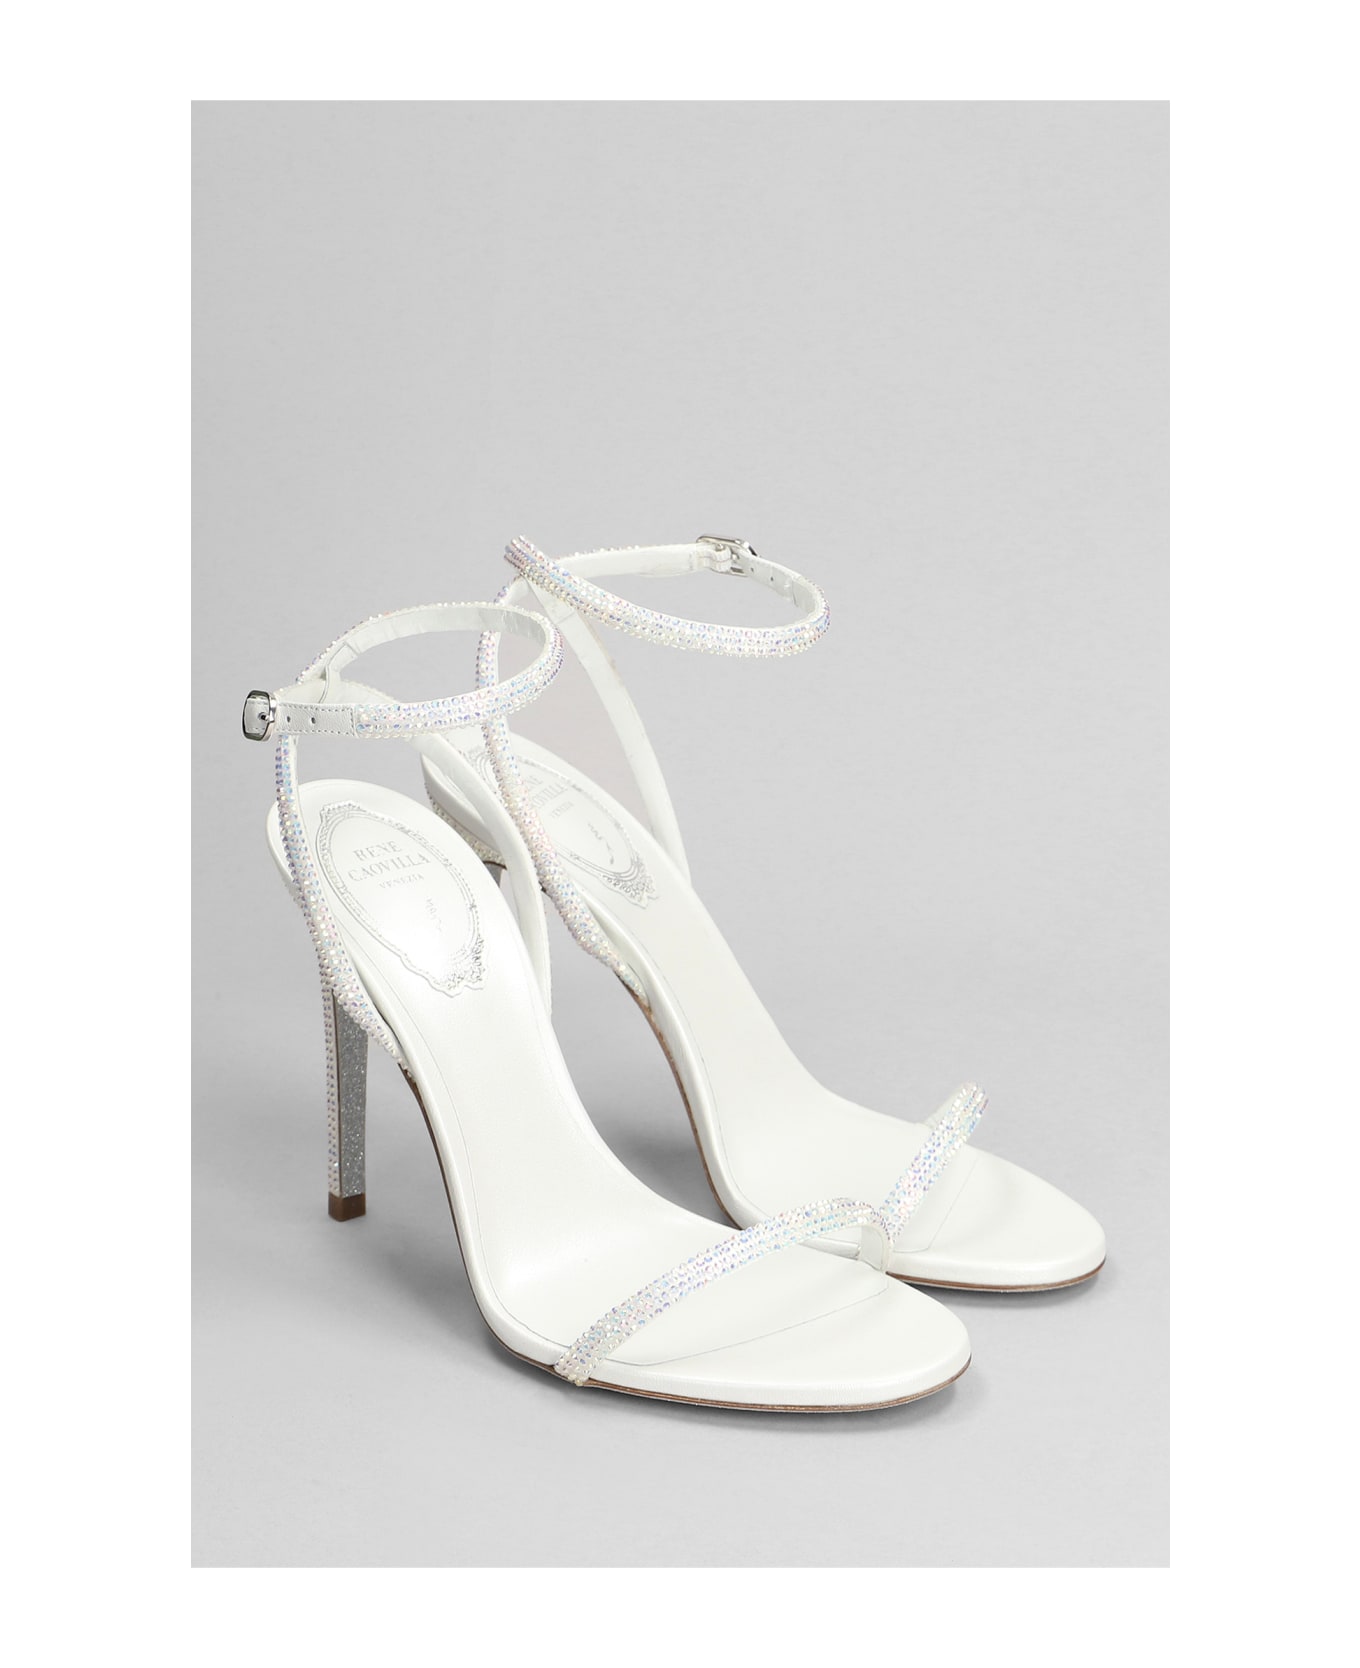 René Caovilla Ellabrita Sandals In White Leather - white